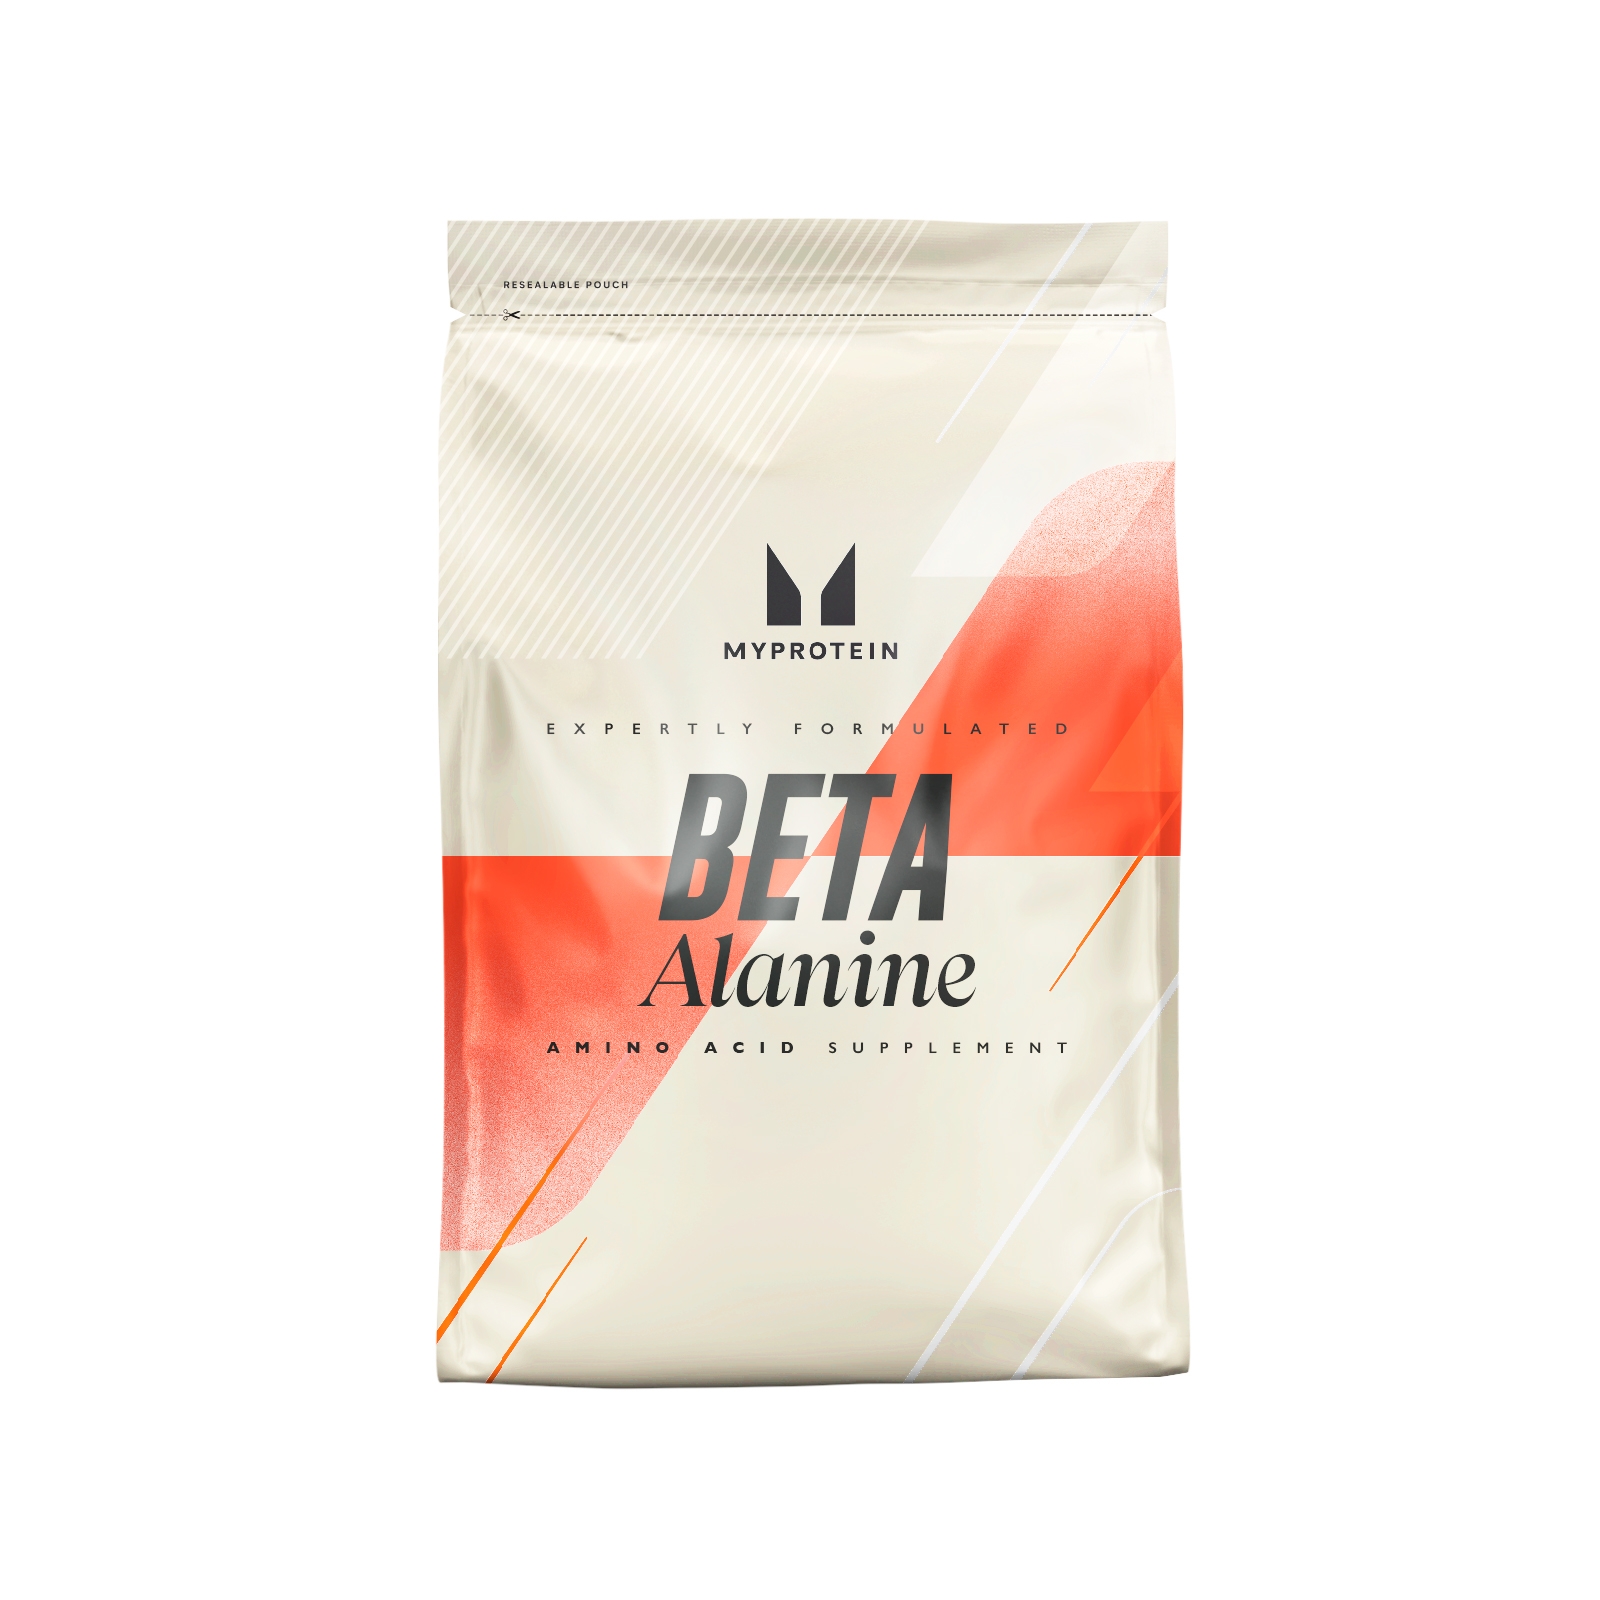 100% Beta-Alanin Aminosäuren - 500g - Geschmacksneutral